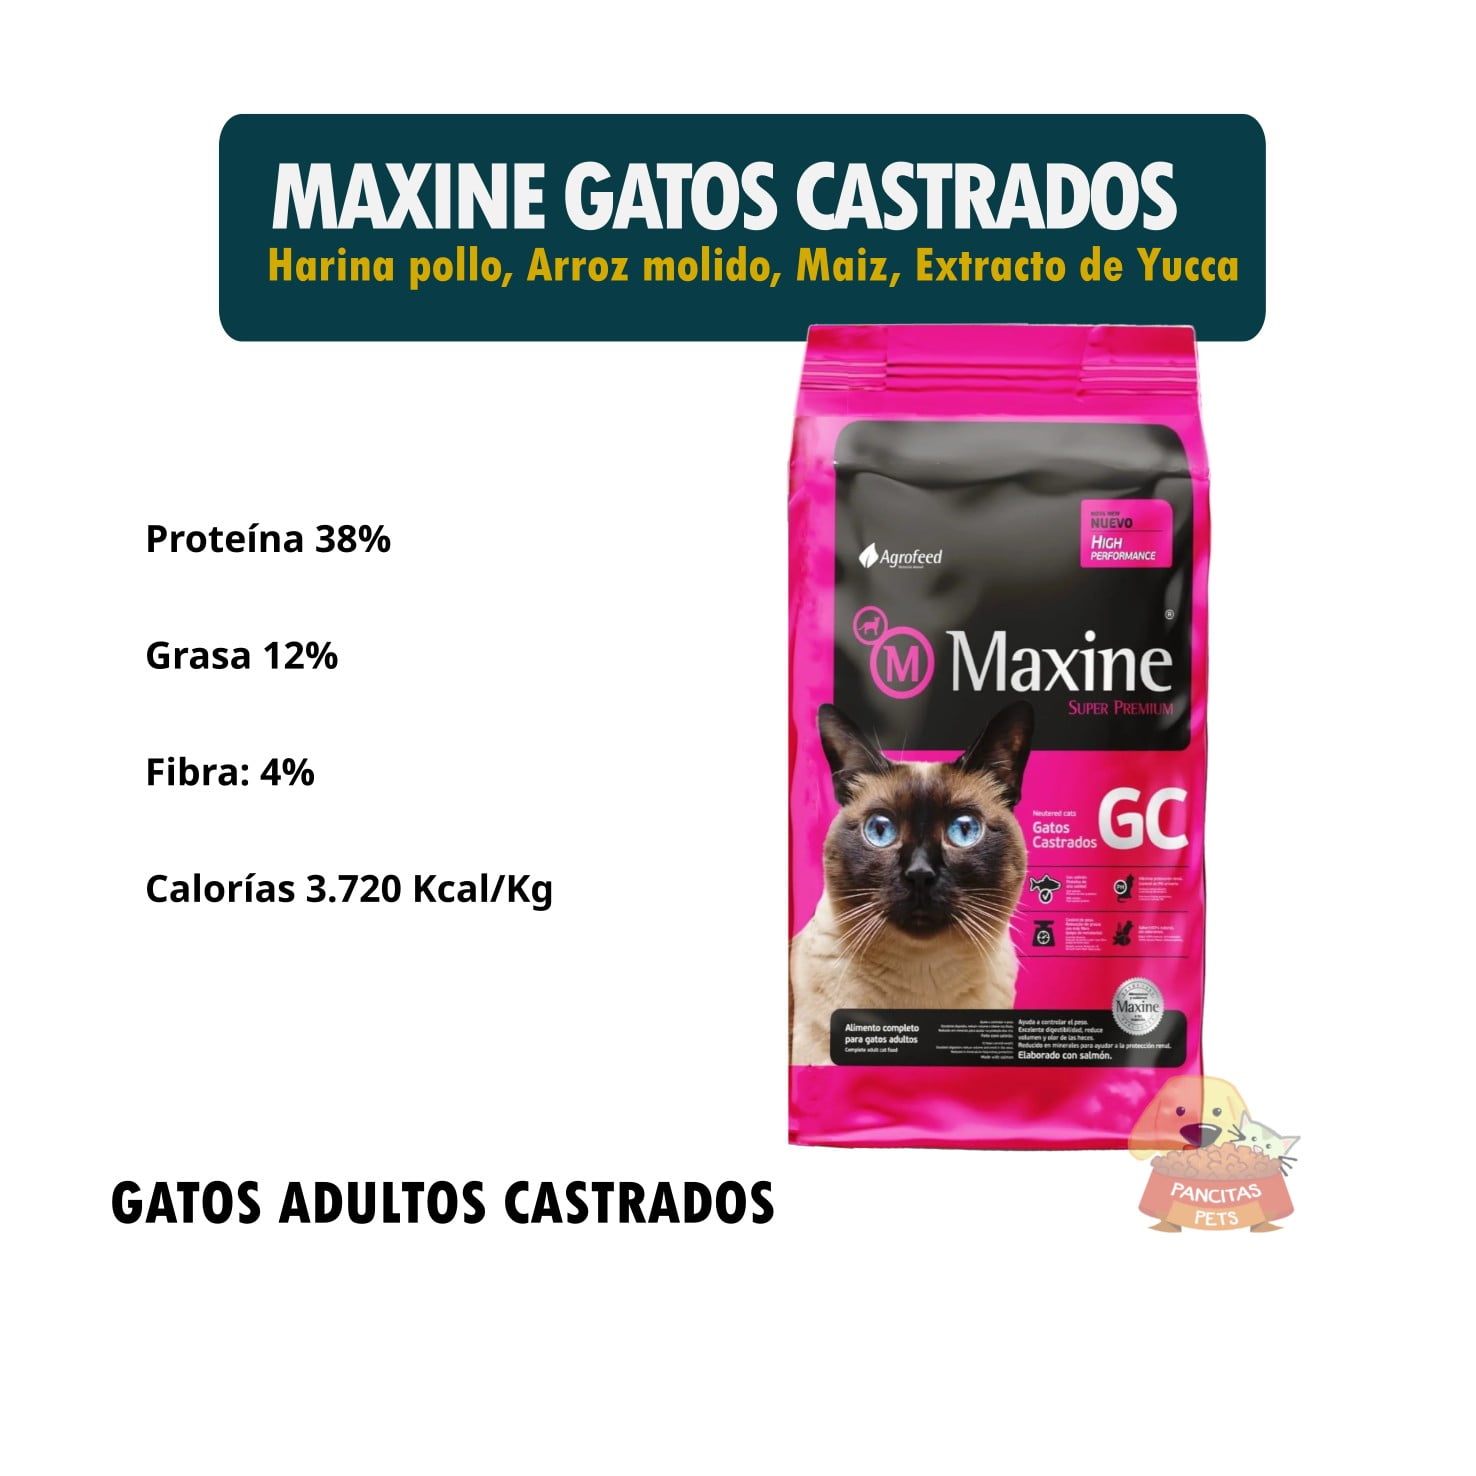 Maxine Gatos Castrados - Detalle